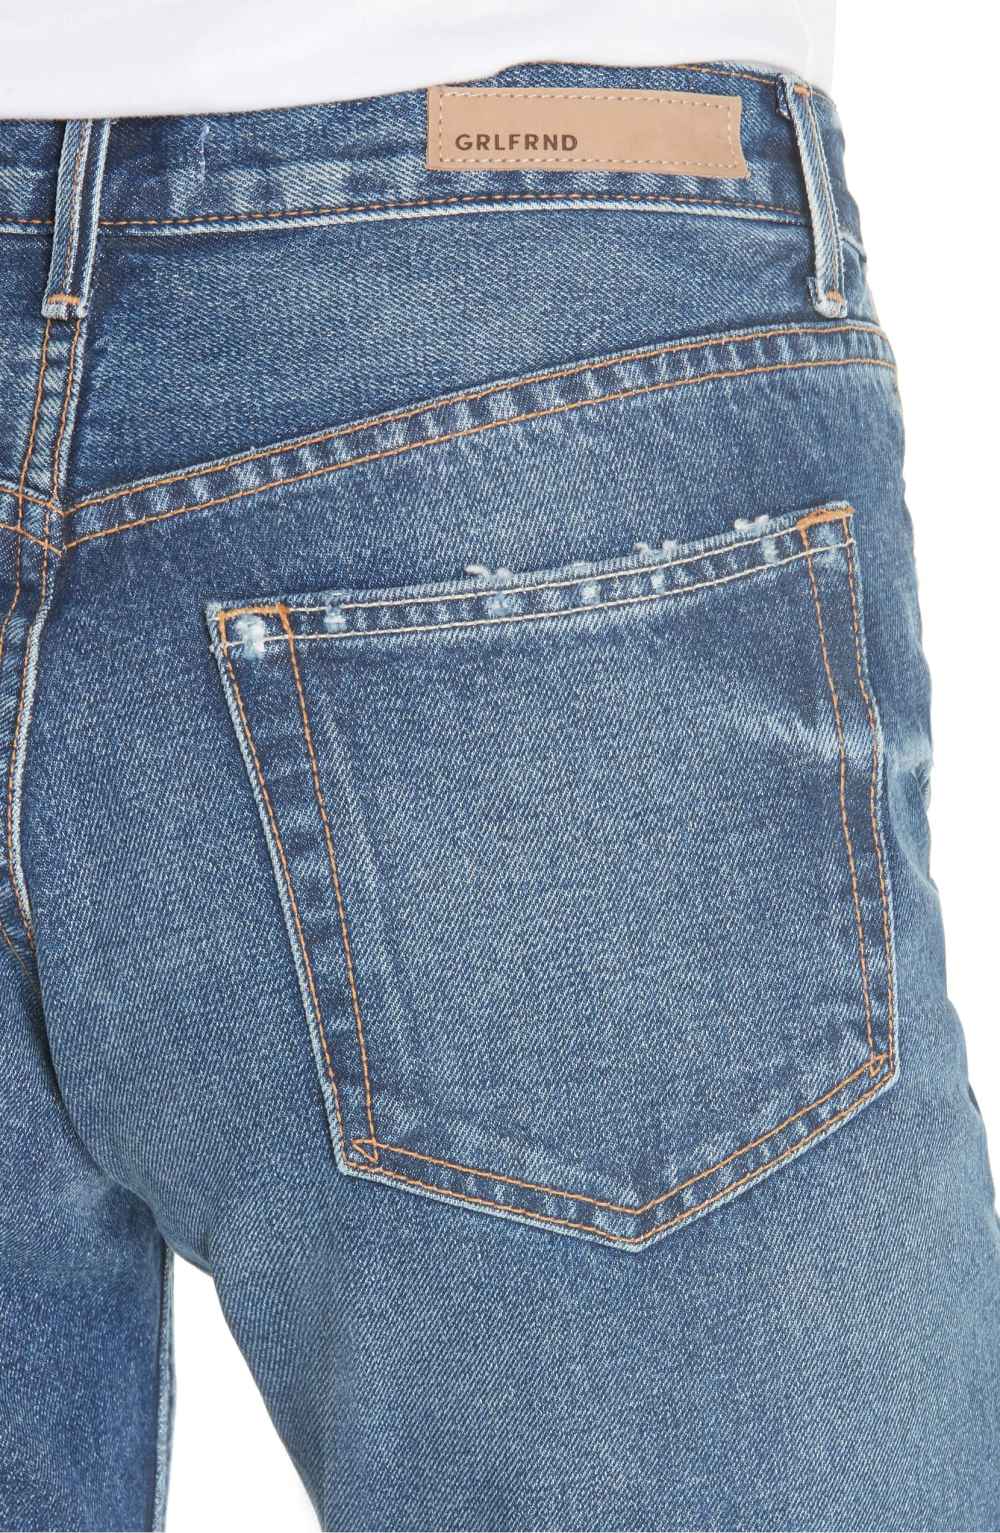 grlfrnd karolina jeans